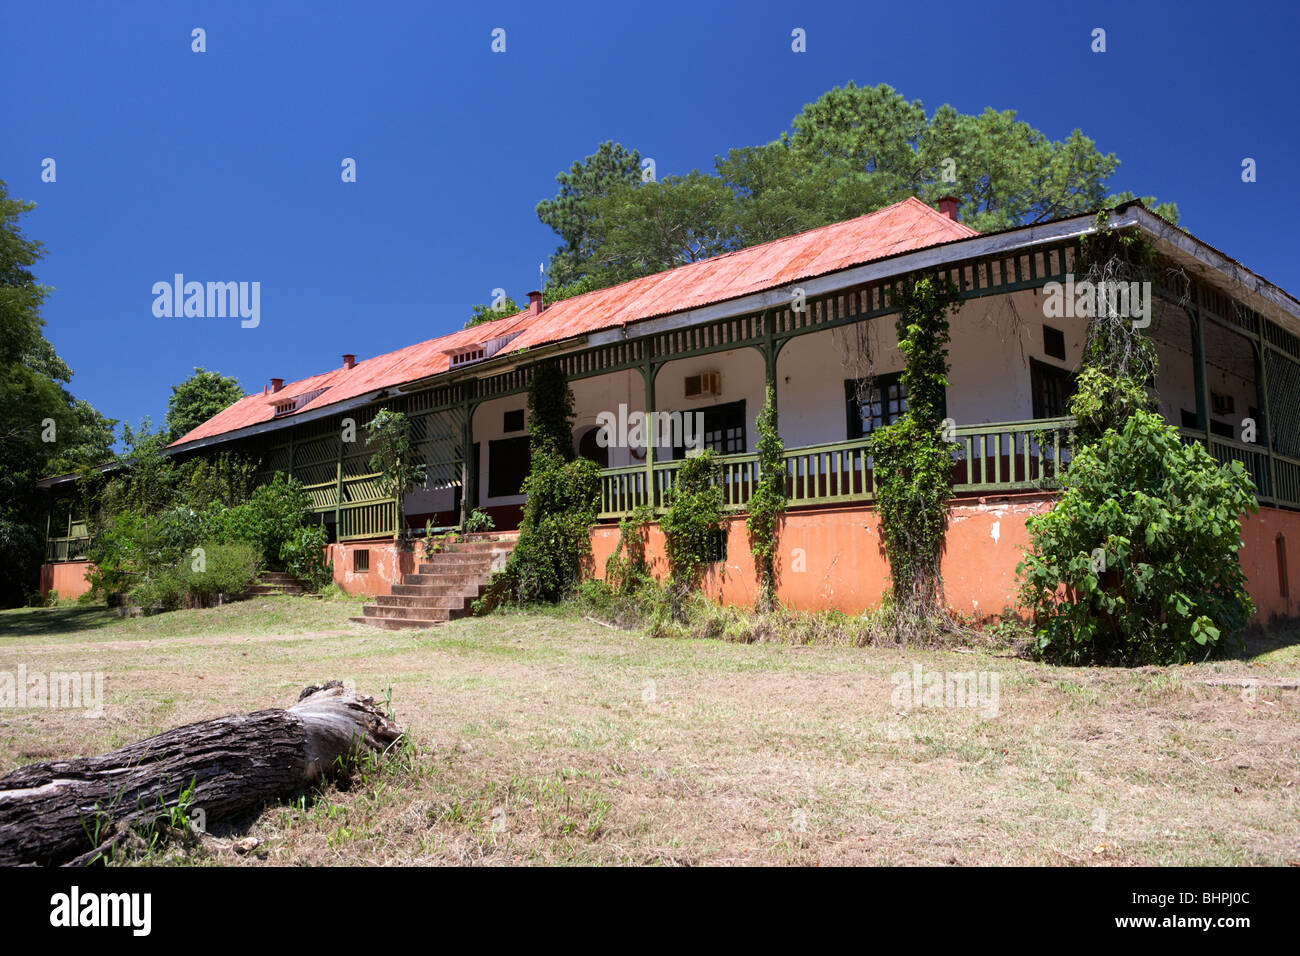 L'ancien hôtel abandonné dans le parc national de l'Iguazu Cataratas, république de l'Argentine, l'Amérique du Sud Banque D'Images